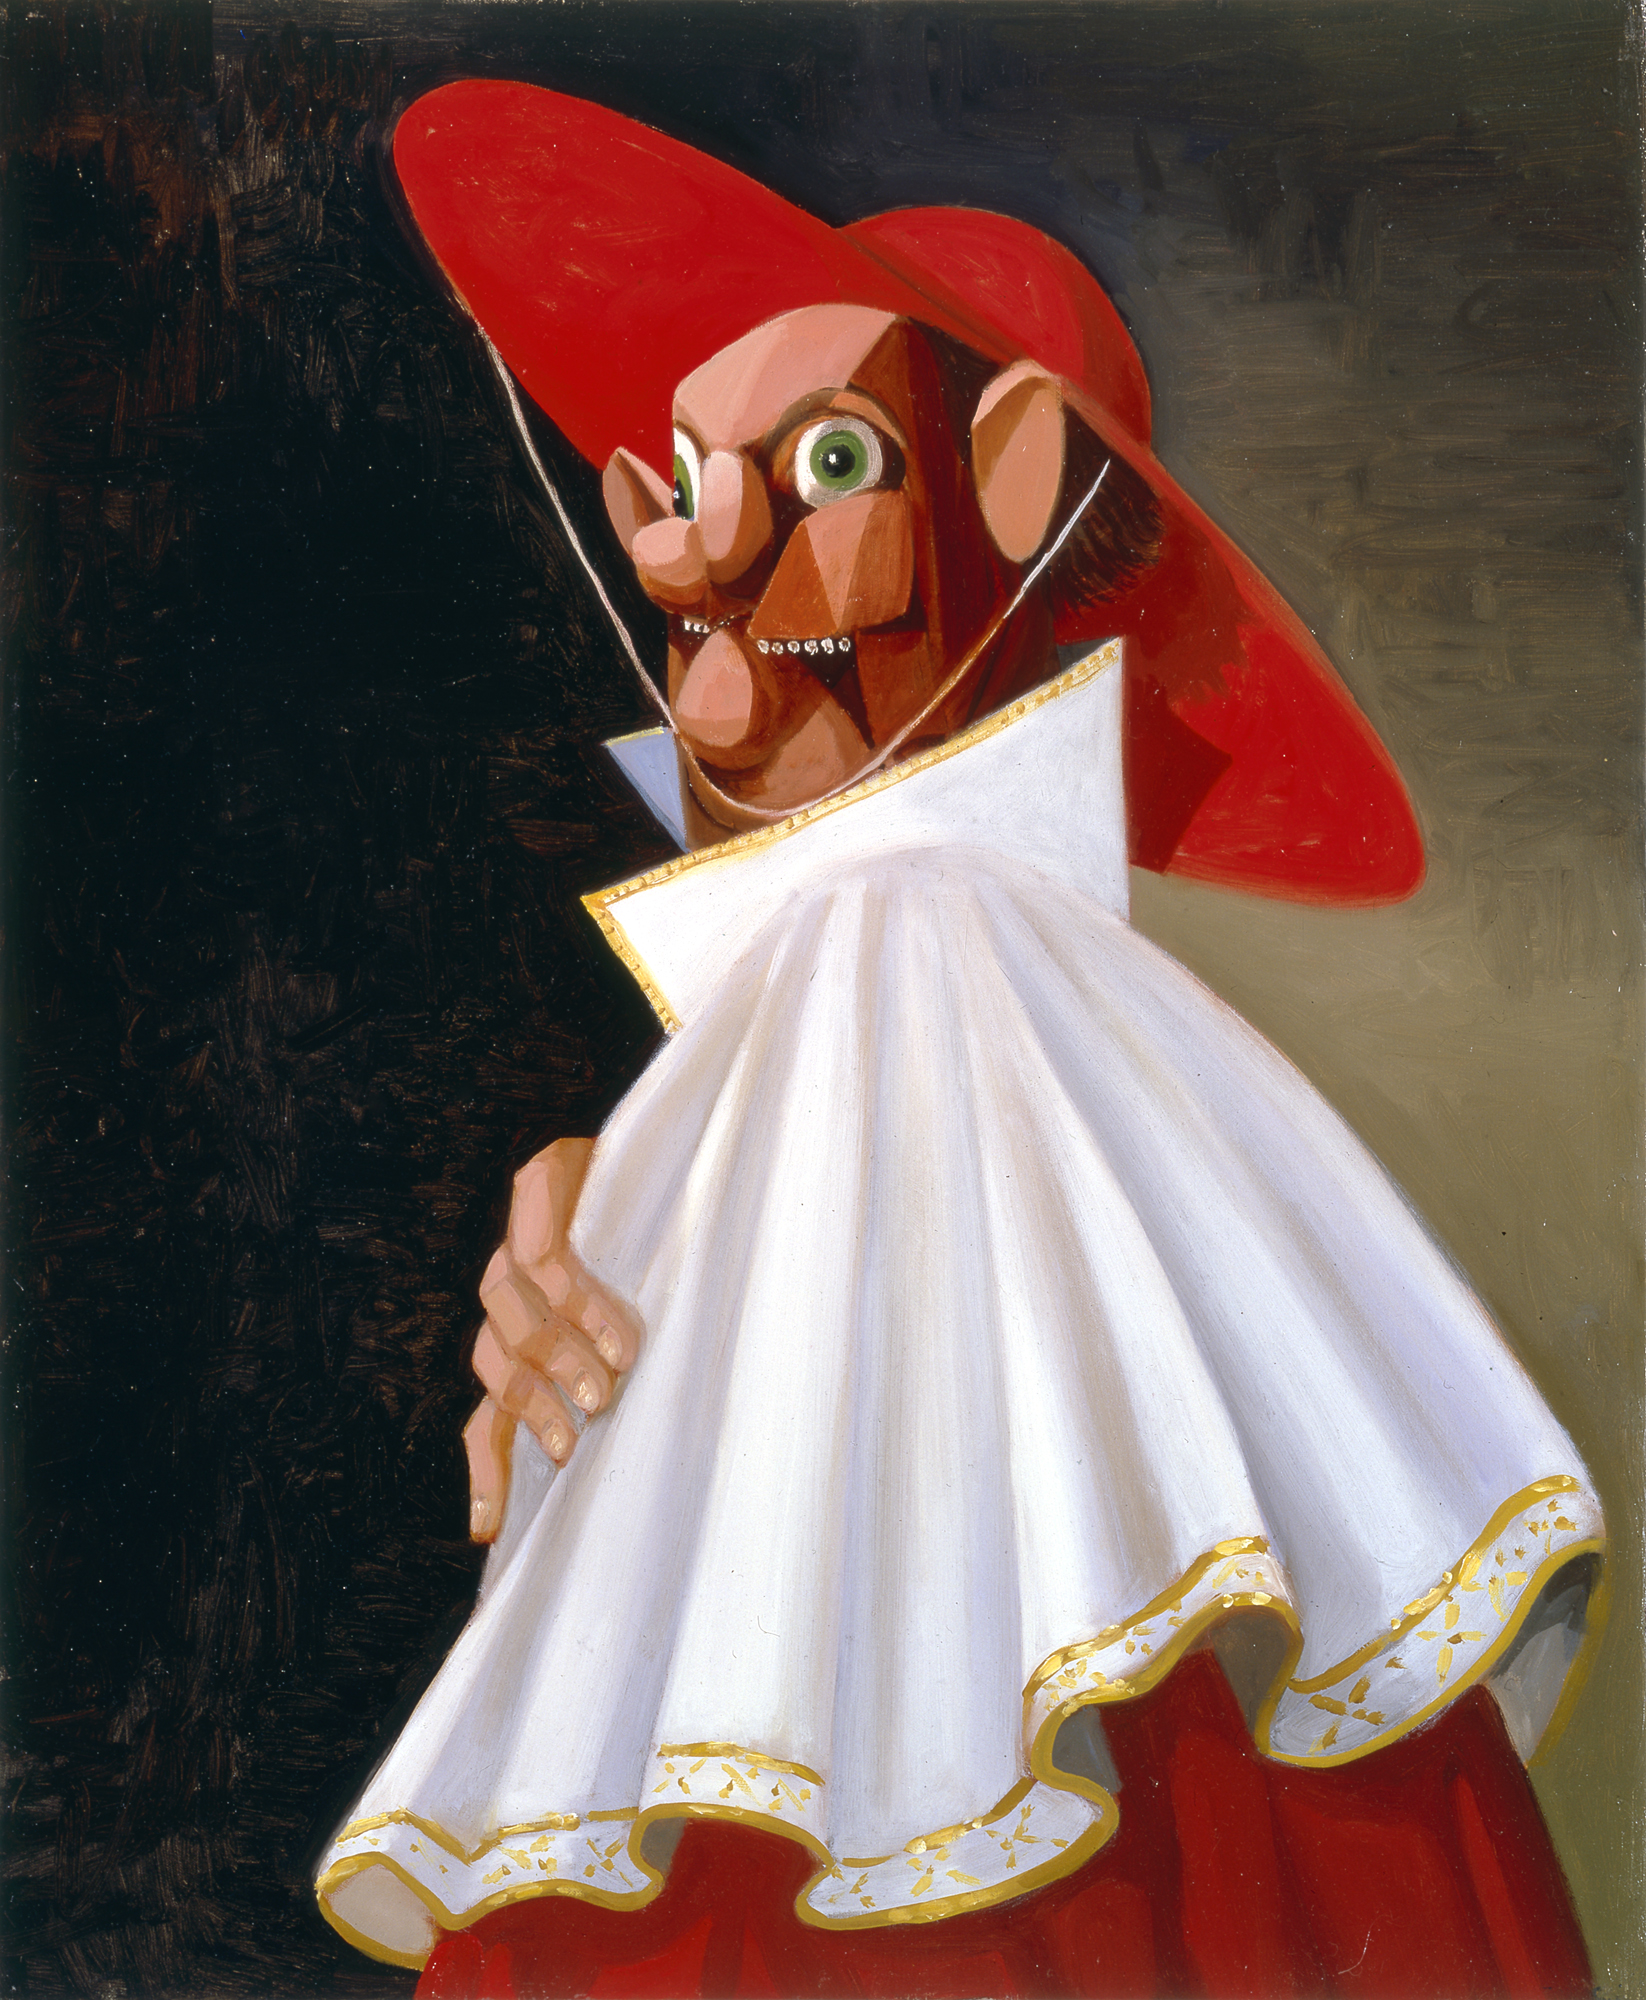 The Cracked Cardinal, 2001. Джордж Кондо (George Condo) - современный американский художник. Искусственный реализм